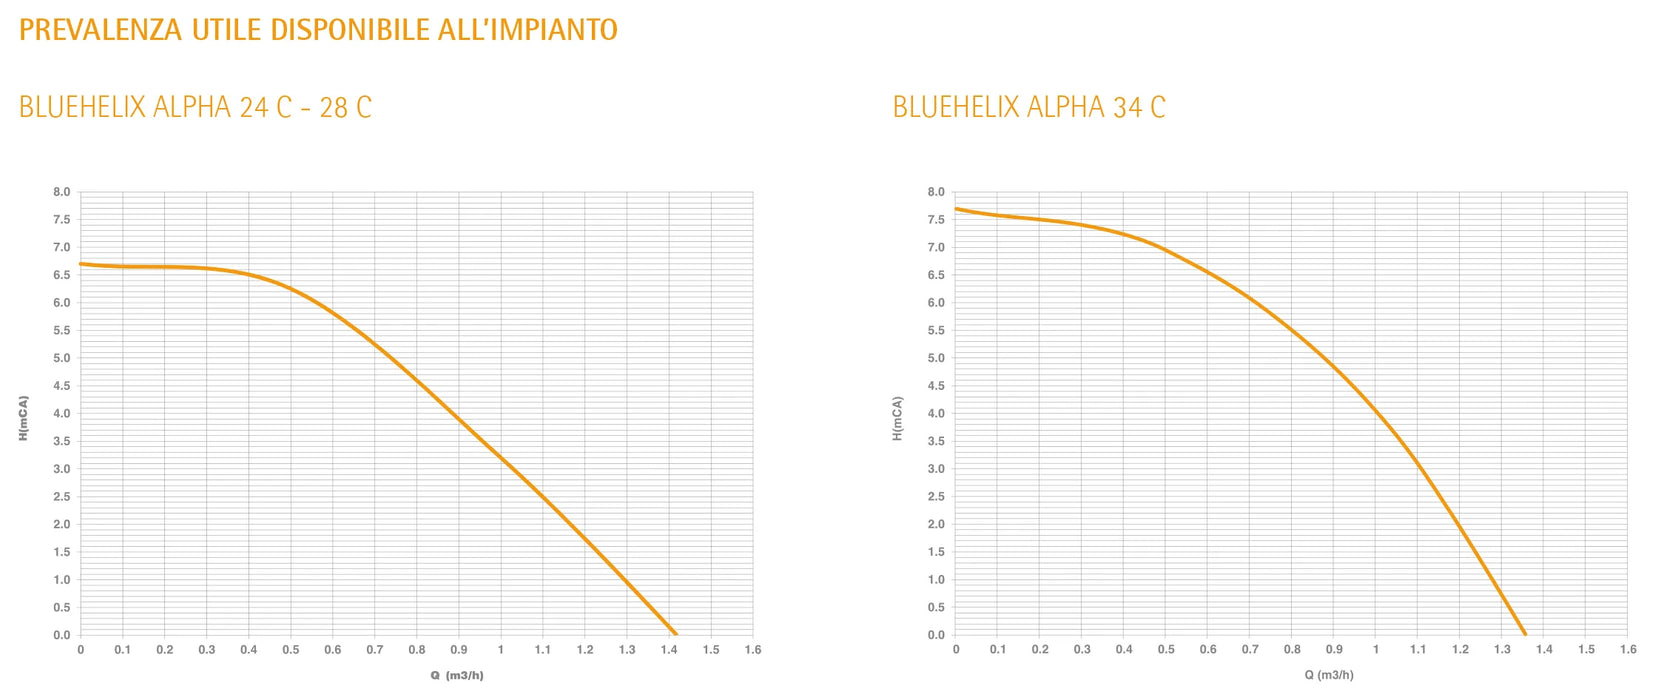 Ferroli - Bluehelix Alpha 28C Caldaia A Condensazione Metano Con Kit Fumi - Articolo: 0Tpf4Awa